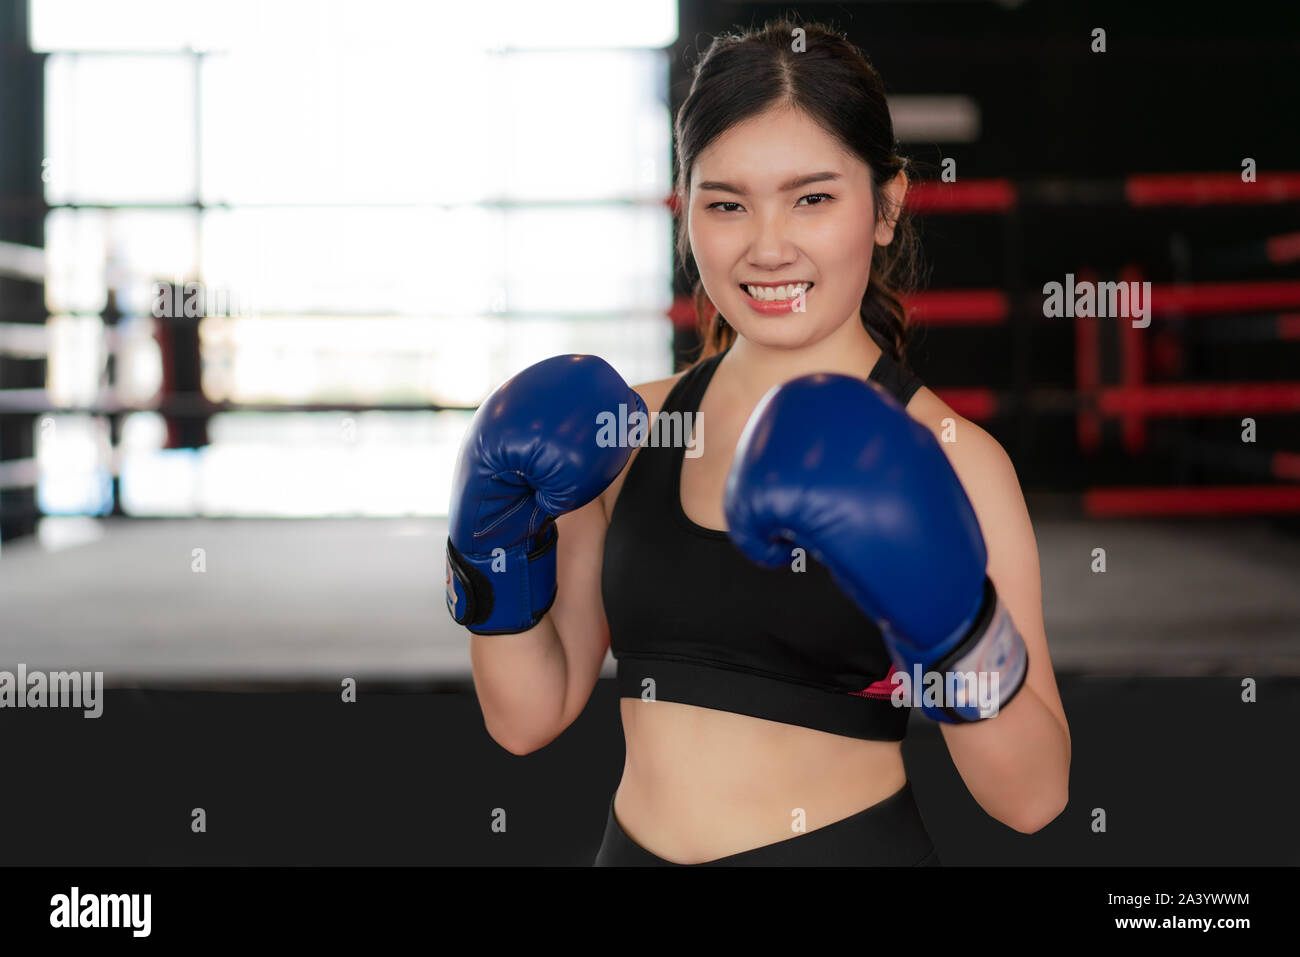 Boxer femme. Young Asian woman smiling happy fitness Boxe bleu portant des gants de boxe boxe avec en arrière-plan. Portrait of sporty digne des h Banque D'Images